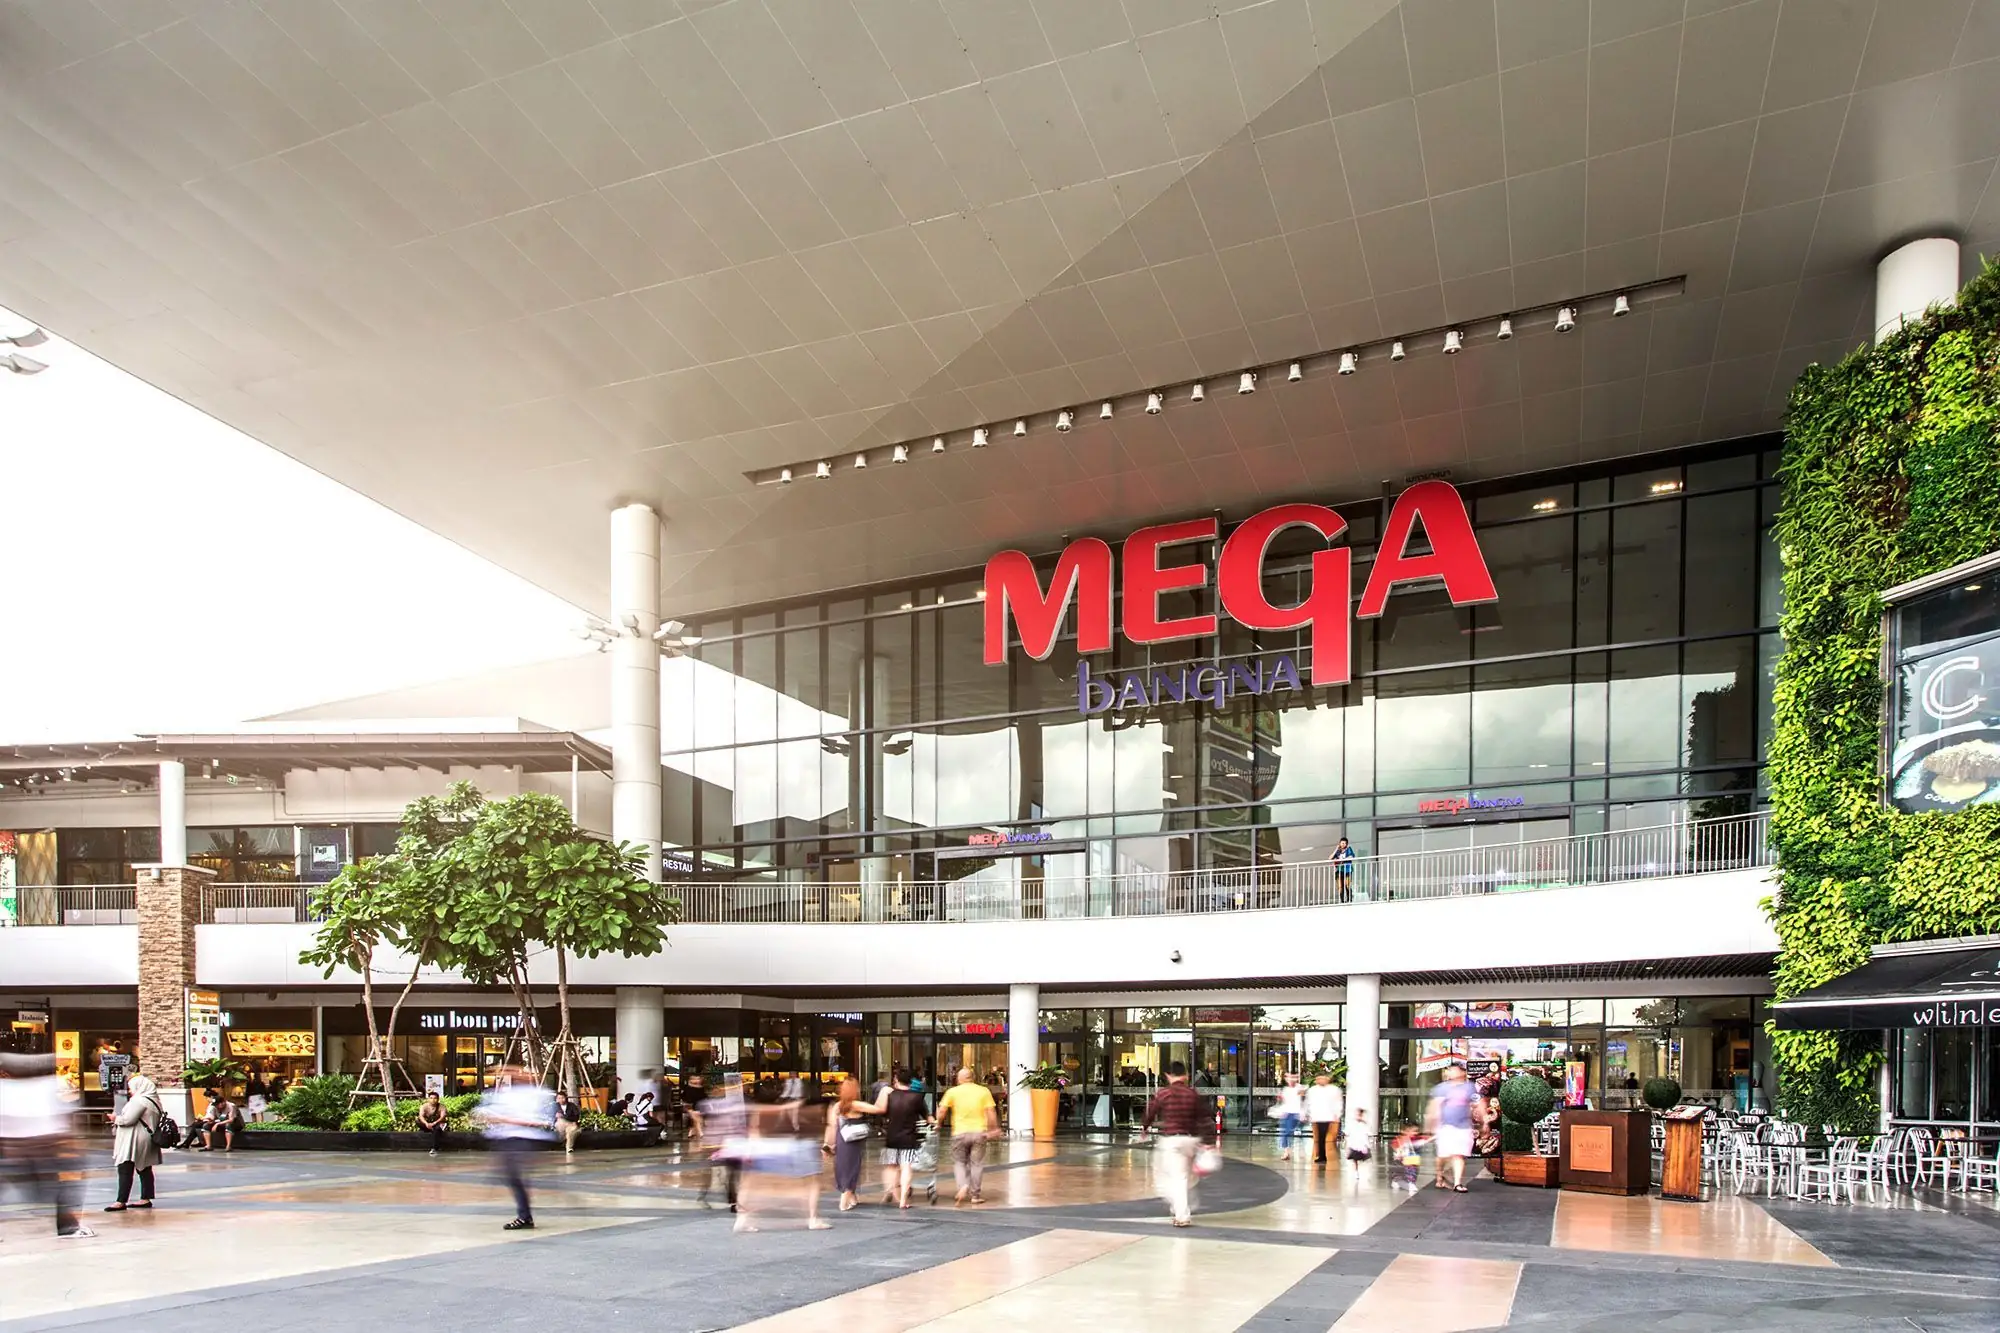 Megabangna 購物中心 Megabangna 曼谷 Megabangna 東南亞最大 購物中心 泰國 購物中心